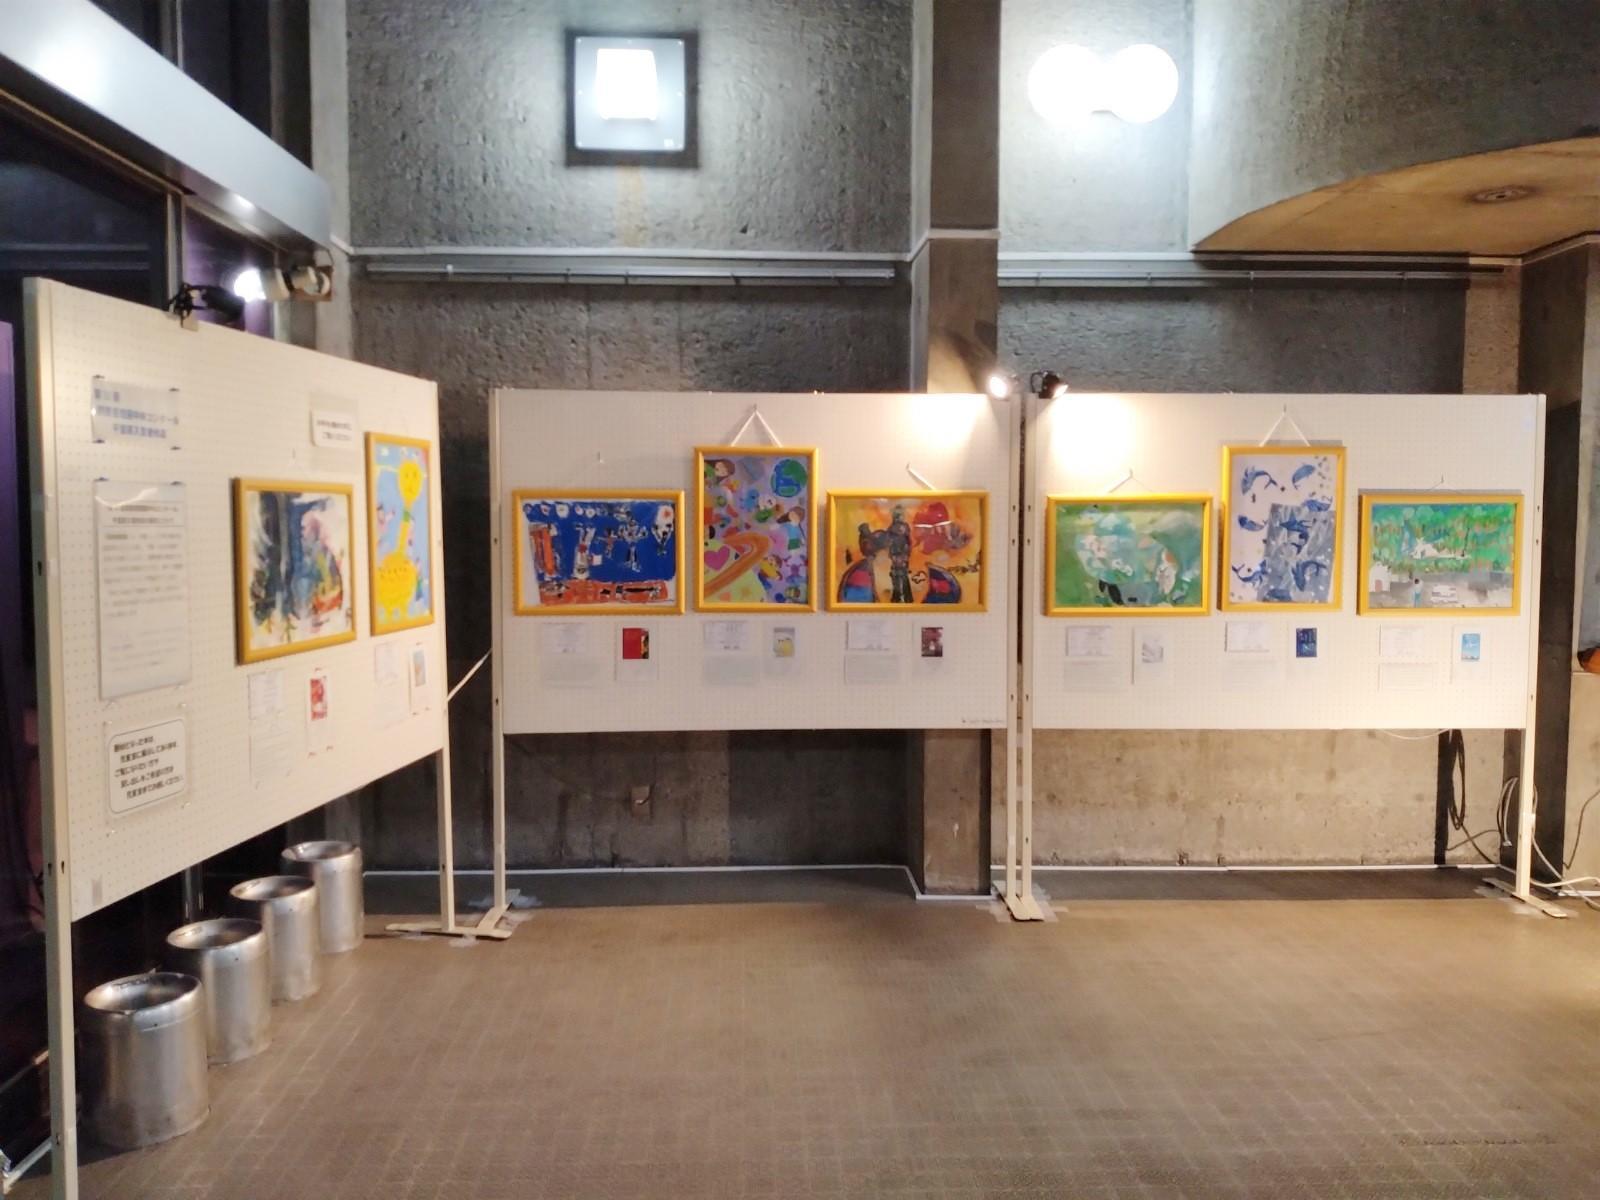 「読書感想画中央コンクール」千葉県入賞作品の展示の様子